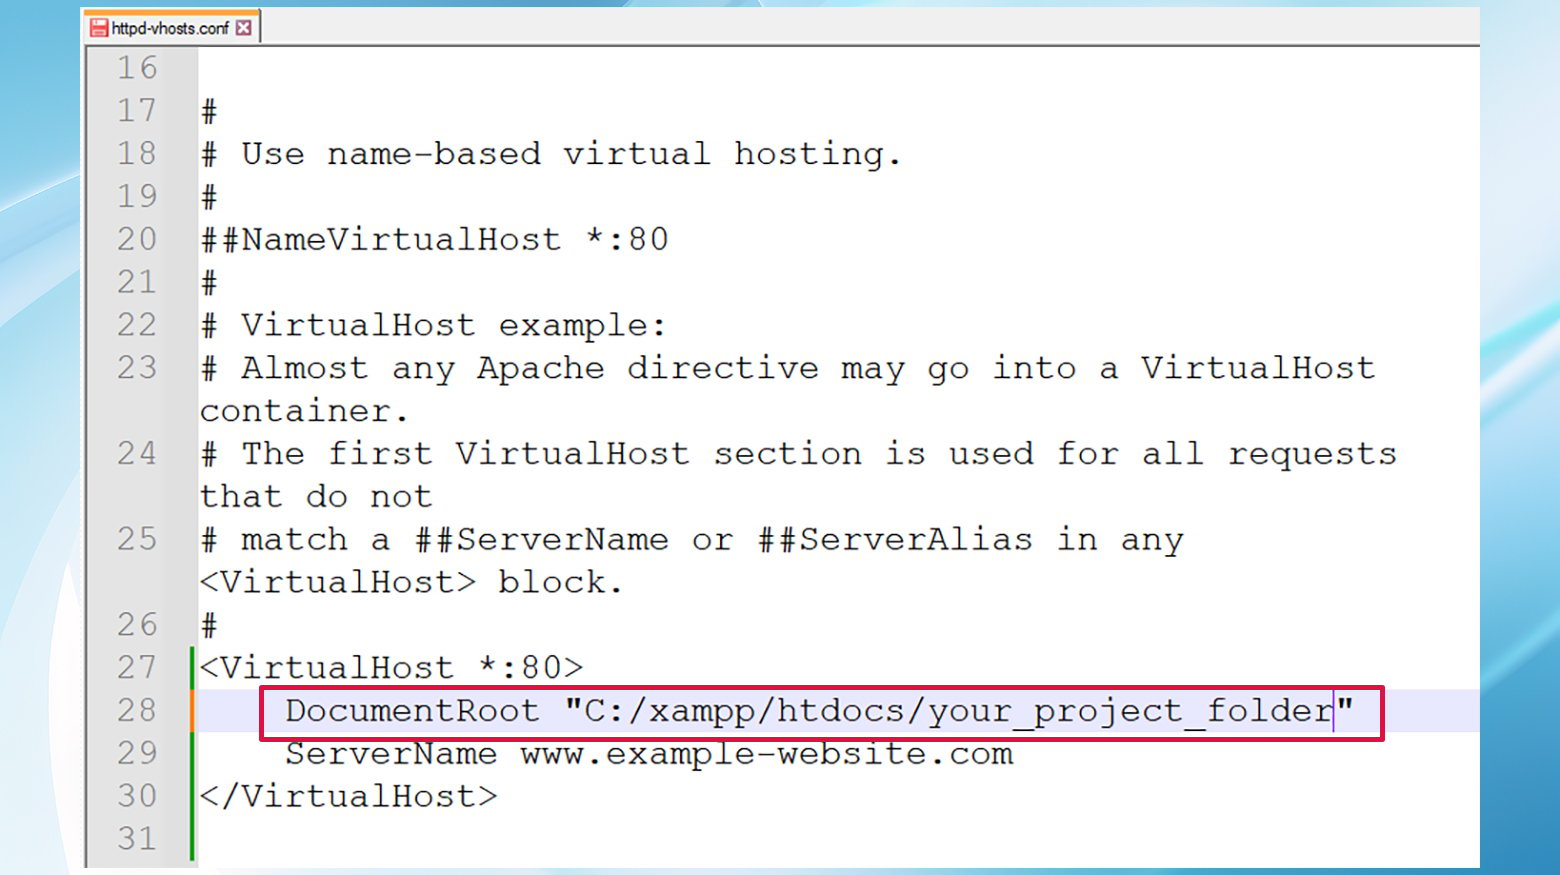 Durch das Aktualisieren von DocumentRoot in der Datei httpd-vhosts.conf kann ein localhost/index.php-Fehler behoben werden.